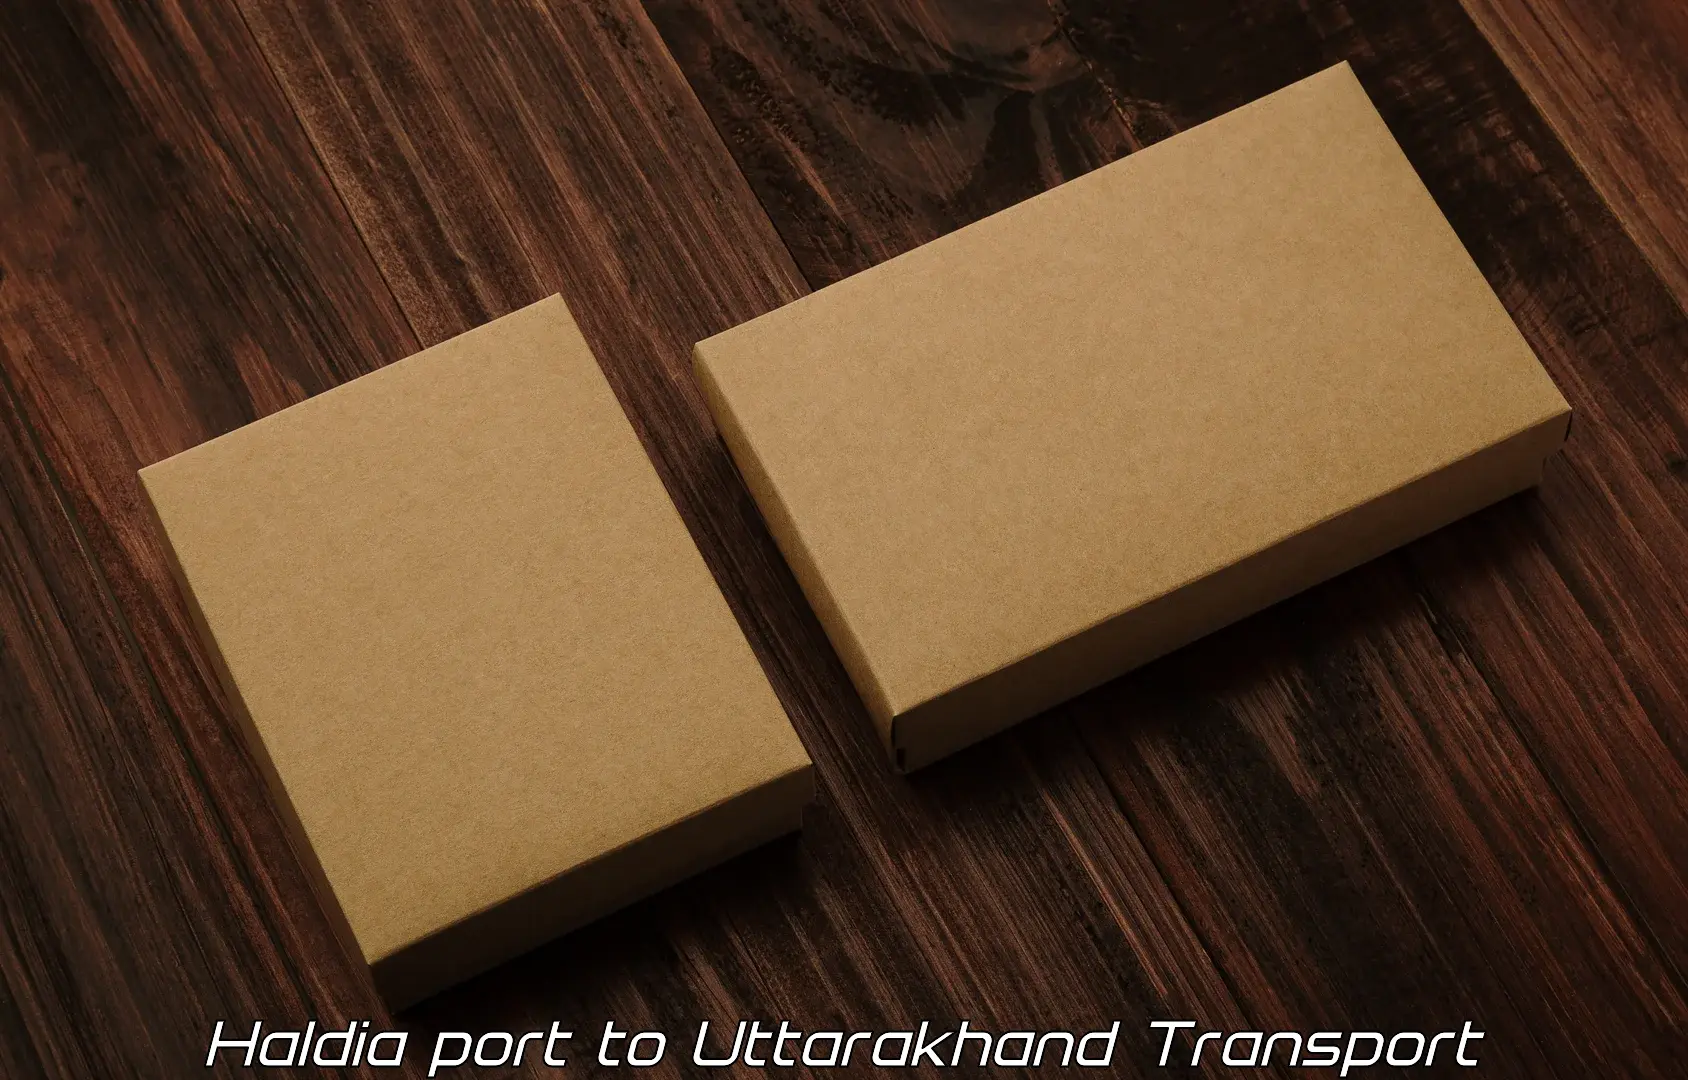 Online transport service Haldia port to IIT Roorkee